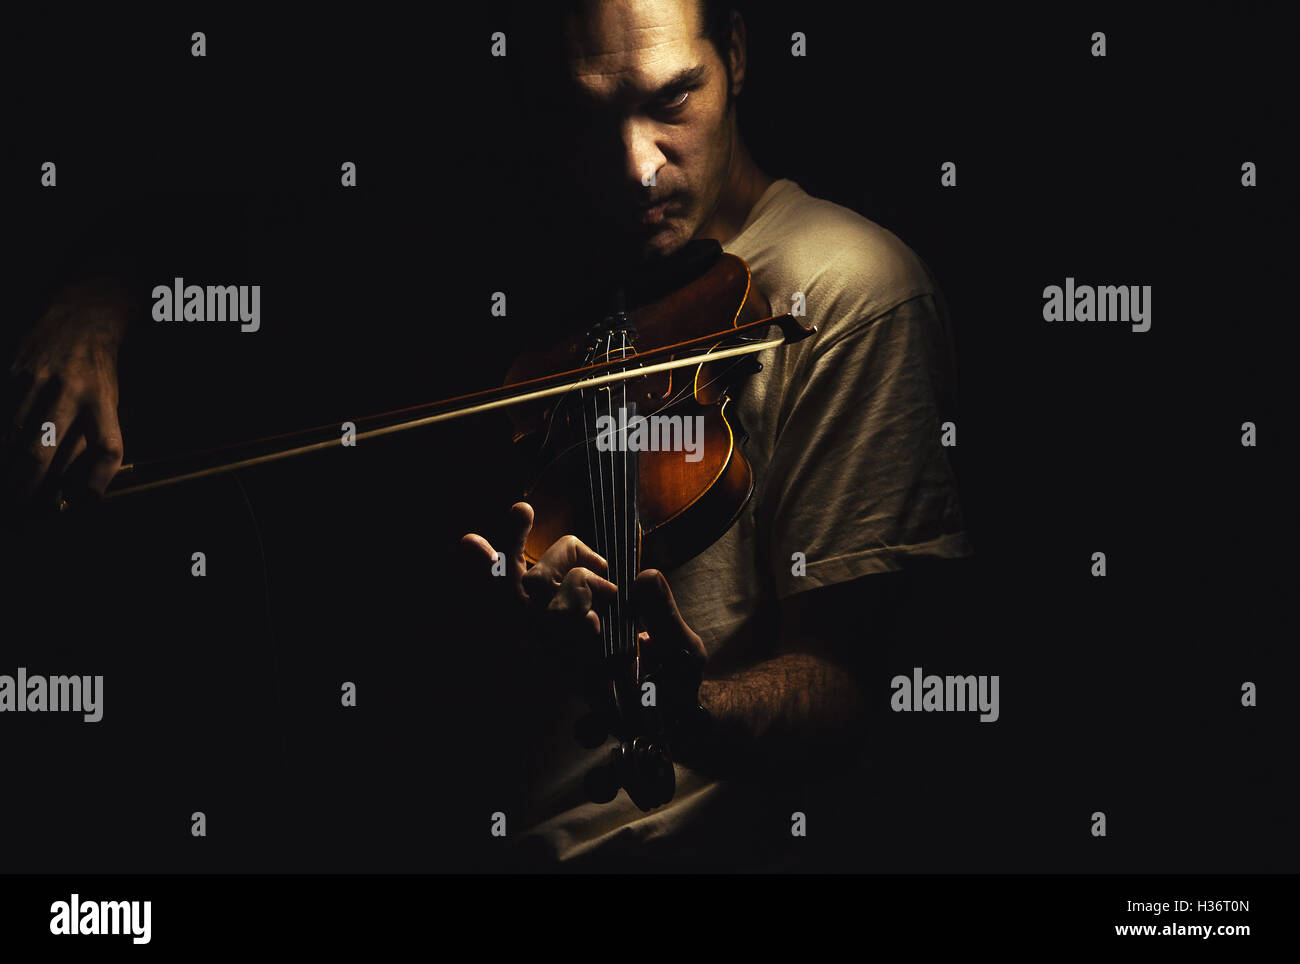 Homme adulte joue un violon, dans une ambiance sombre, montrant les émotions et les expressions. Banque D'Images